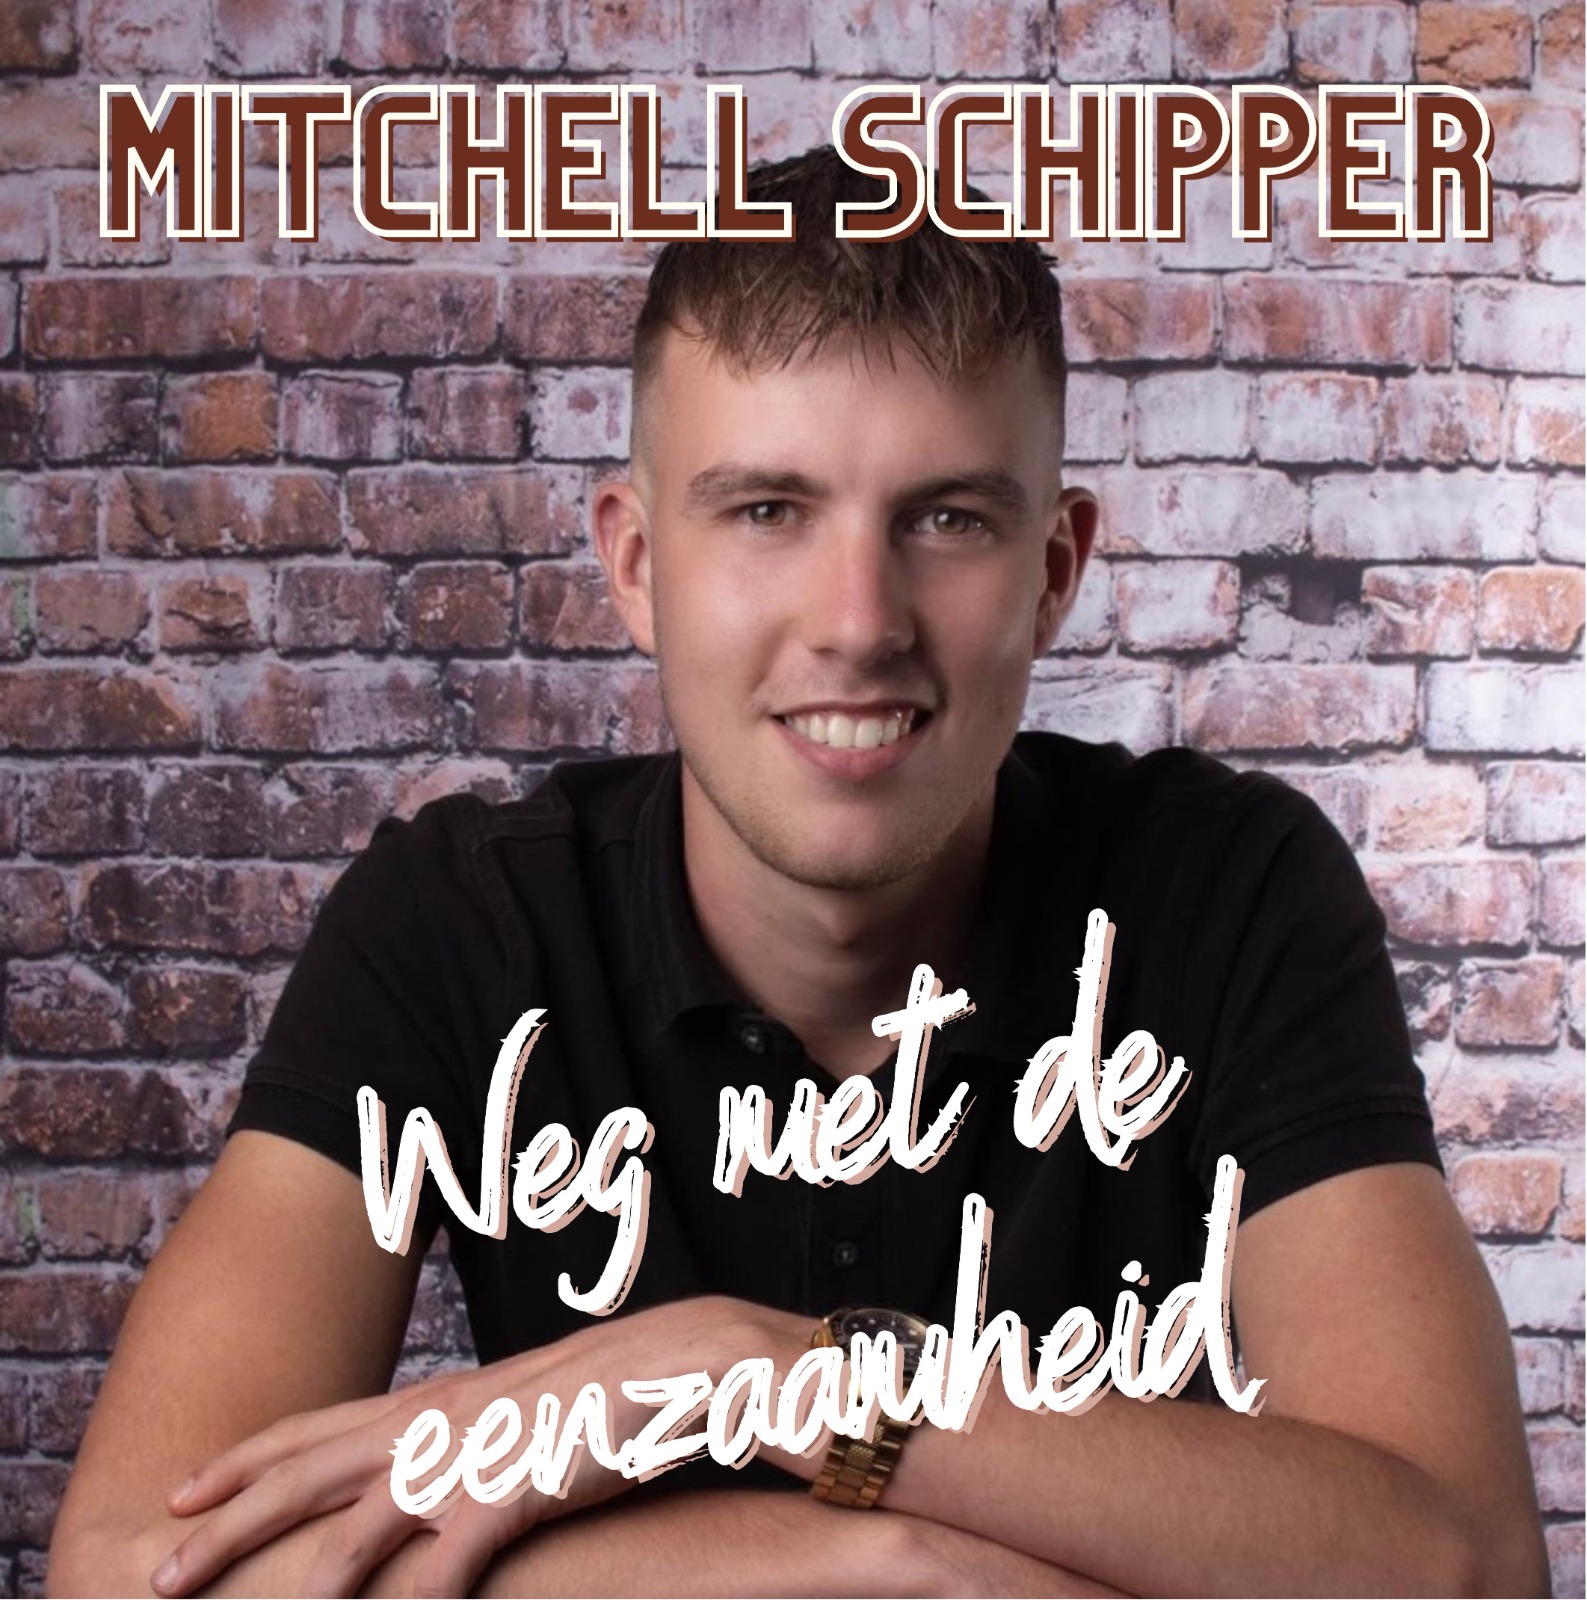 Mitchell Schipper - Weg met de eenzaamheid